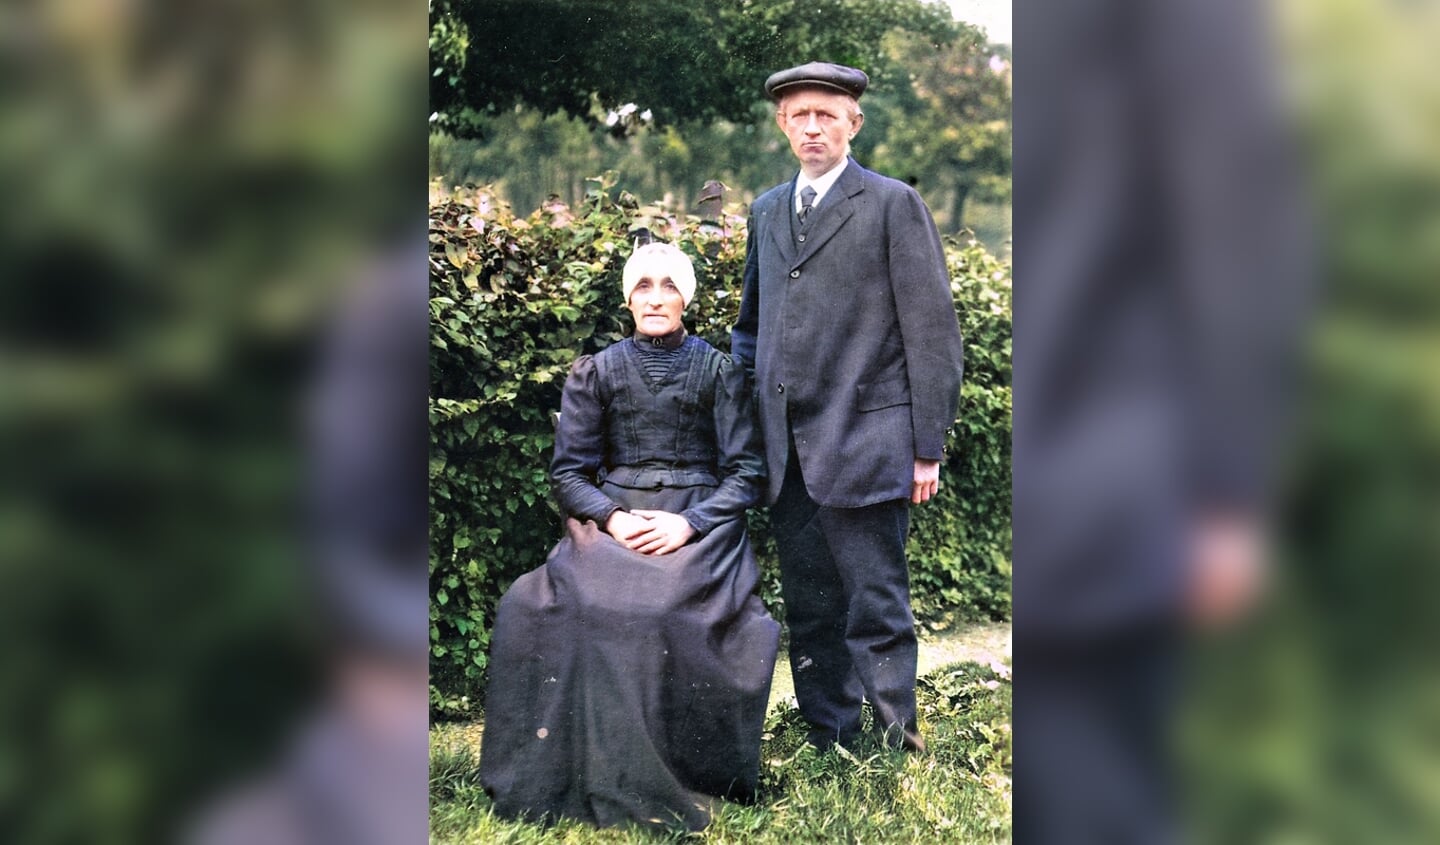 Gijsbert Slingerland met zijn vrouw Hendrikje Versloot. De foto dateert van 1913, ter gelegenheid van het huwelijk van hun dochter Marie (stamboom Versloot).